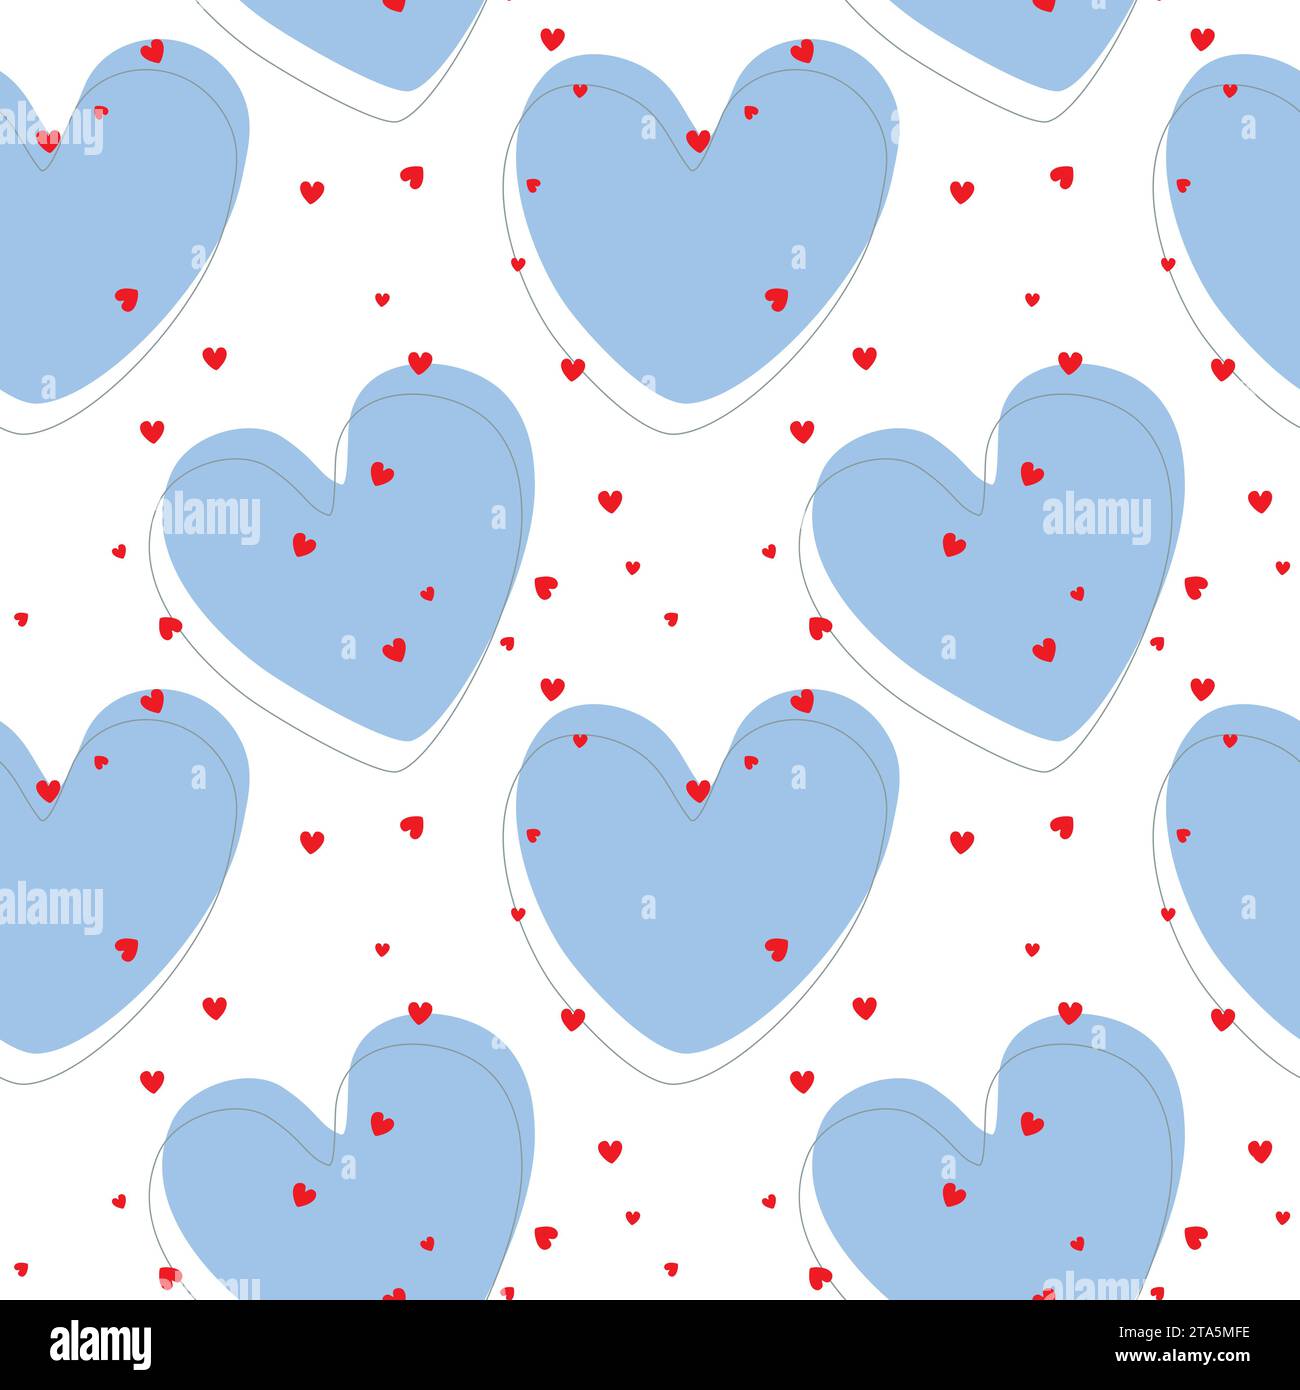 Motif de coeurs bleus avec petits coeurs rouges, pour la Saint Valentin, mariage, réciprocité d'amour, emballage, papier peint, couverture, fond blanc. Vector ill Illustration de Vecteur